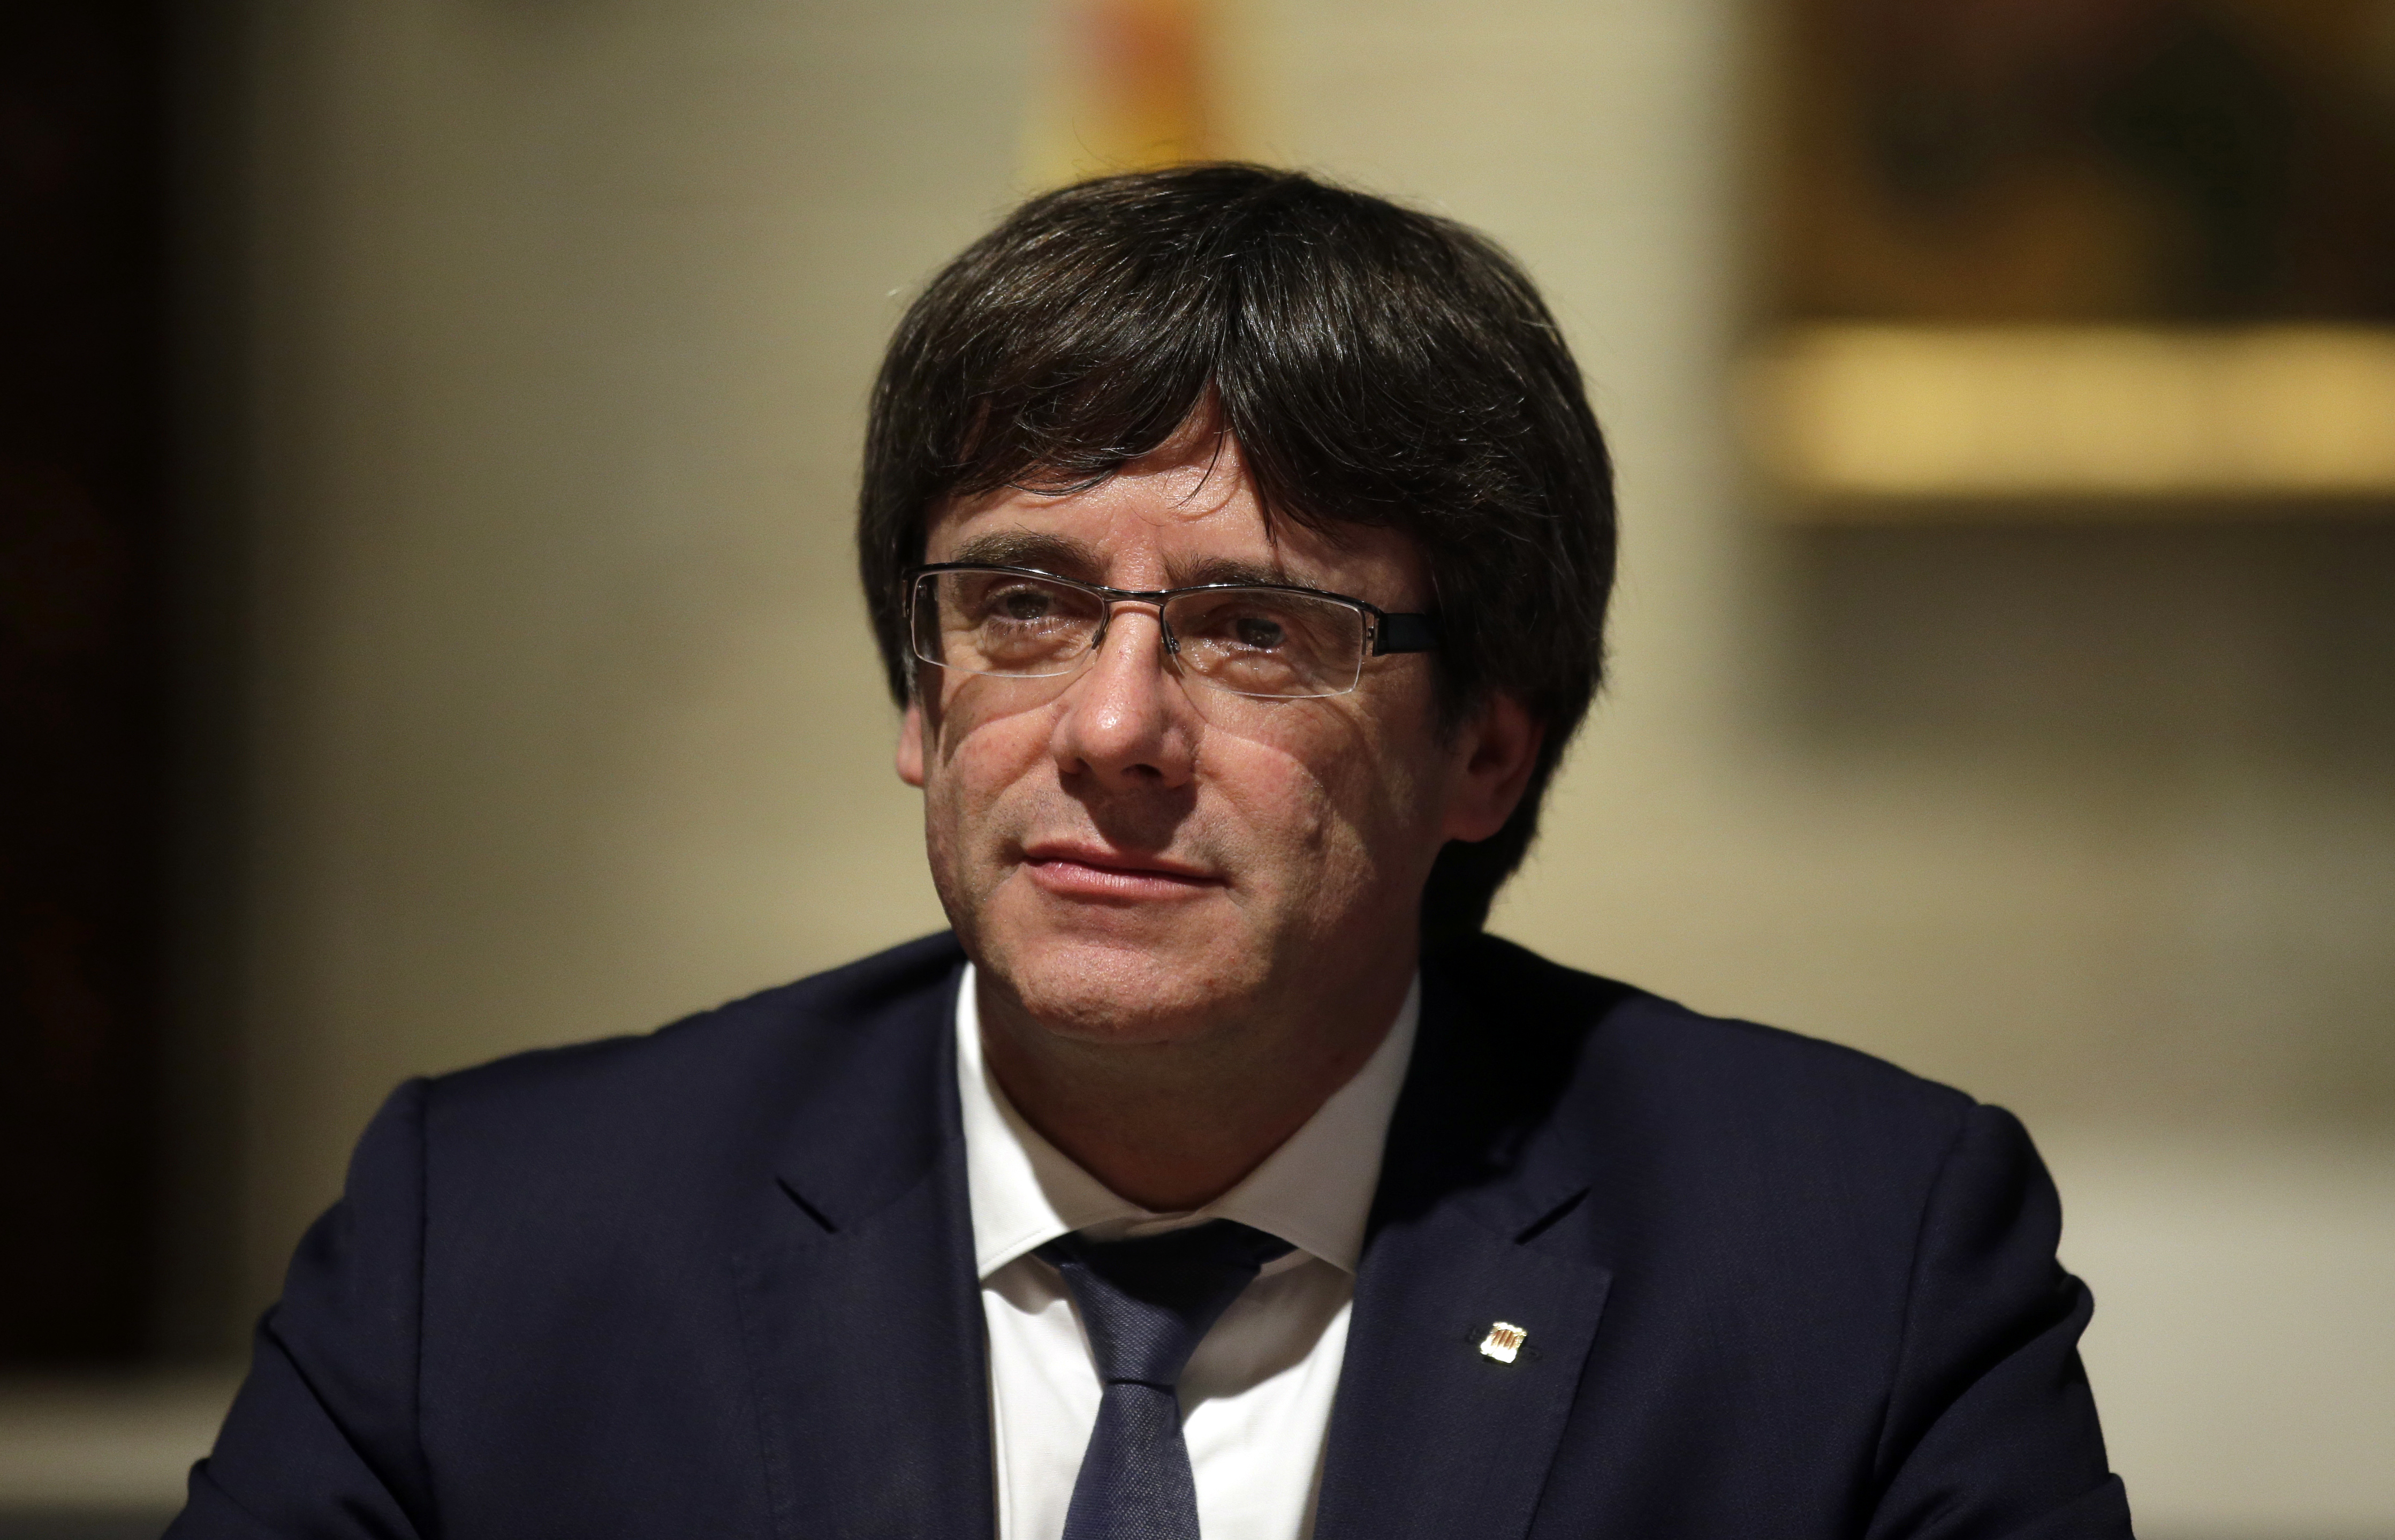 Puigdemont retrasa al martes su comparecencia ante Parlamento catalán